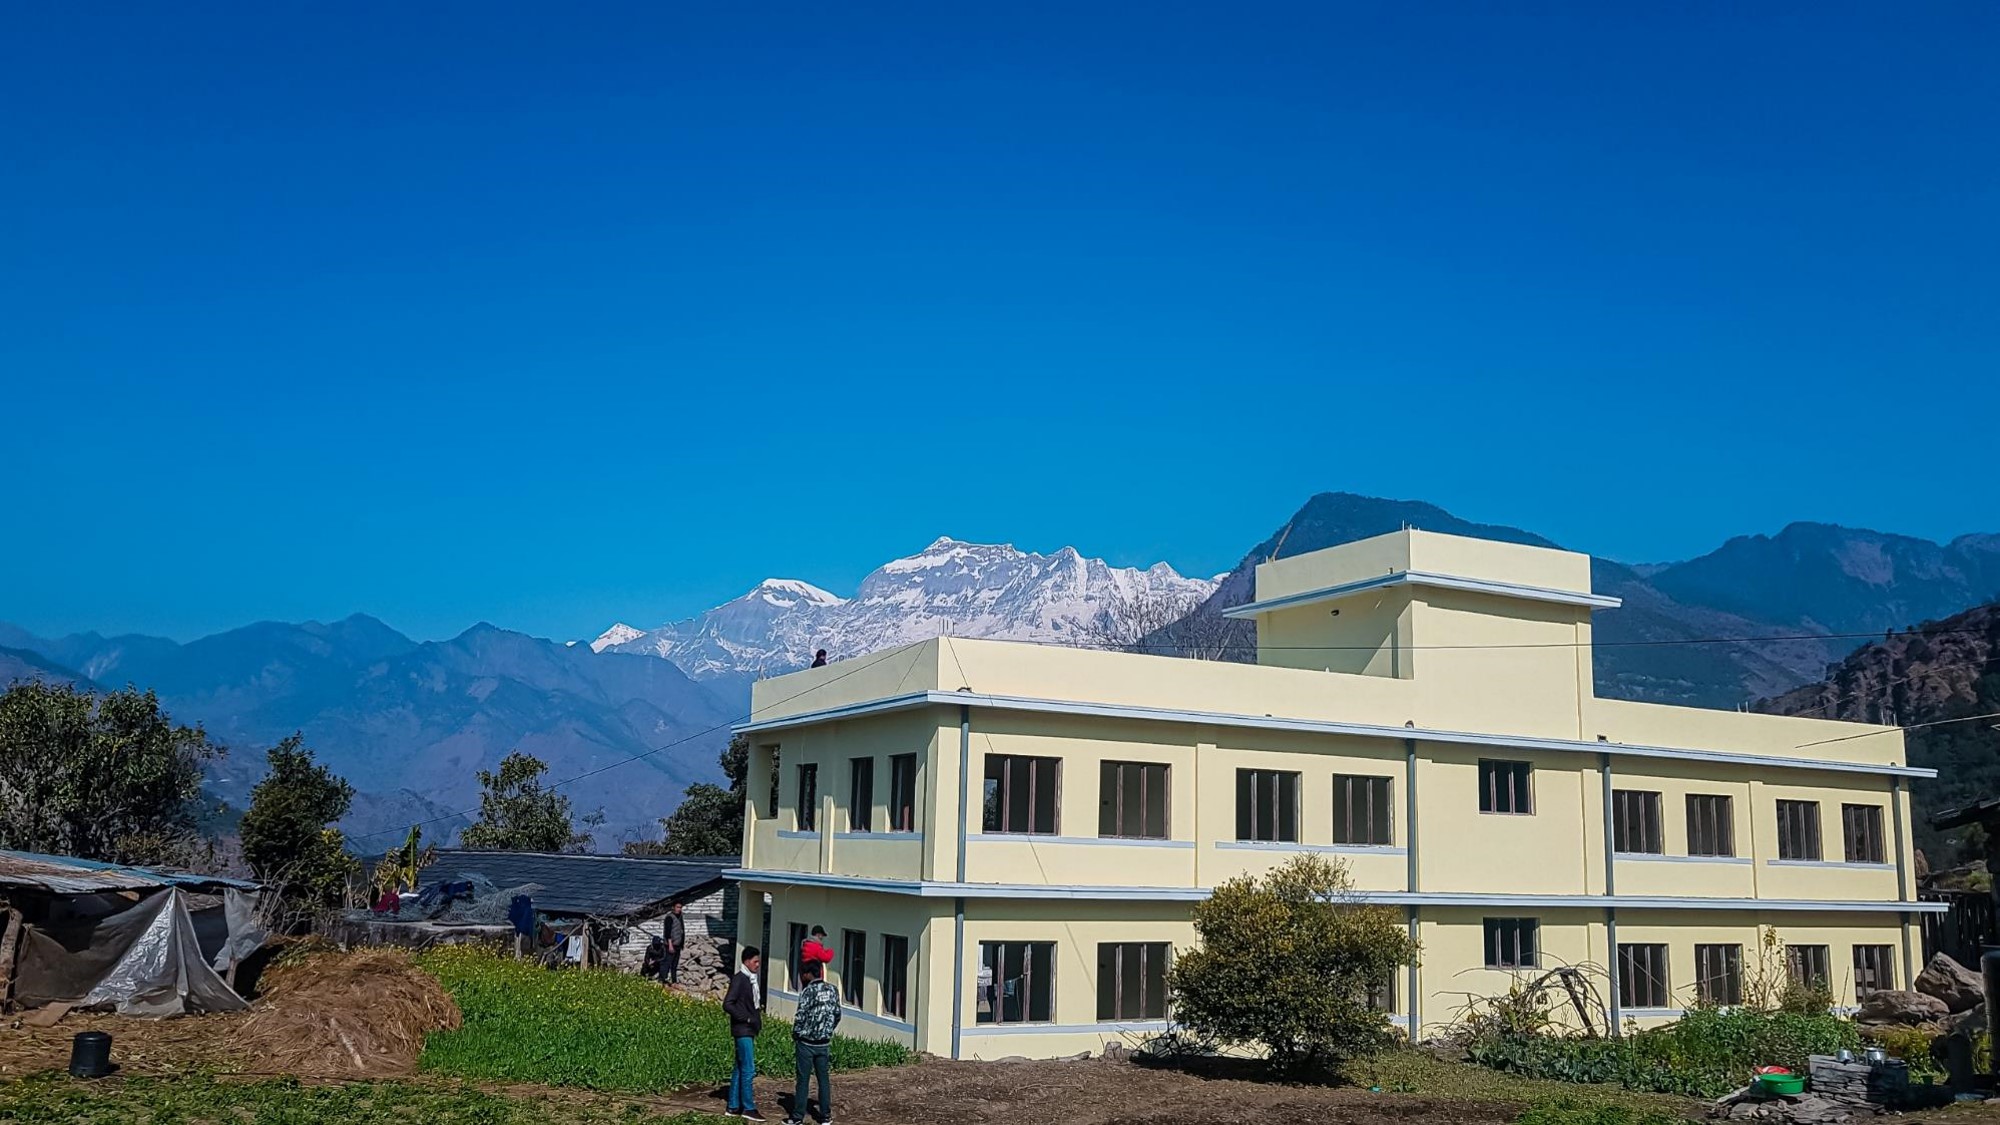 Nova escola no Nepal